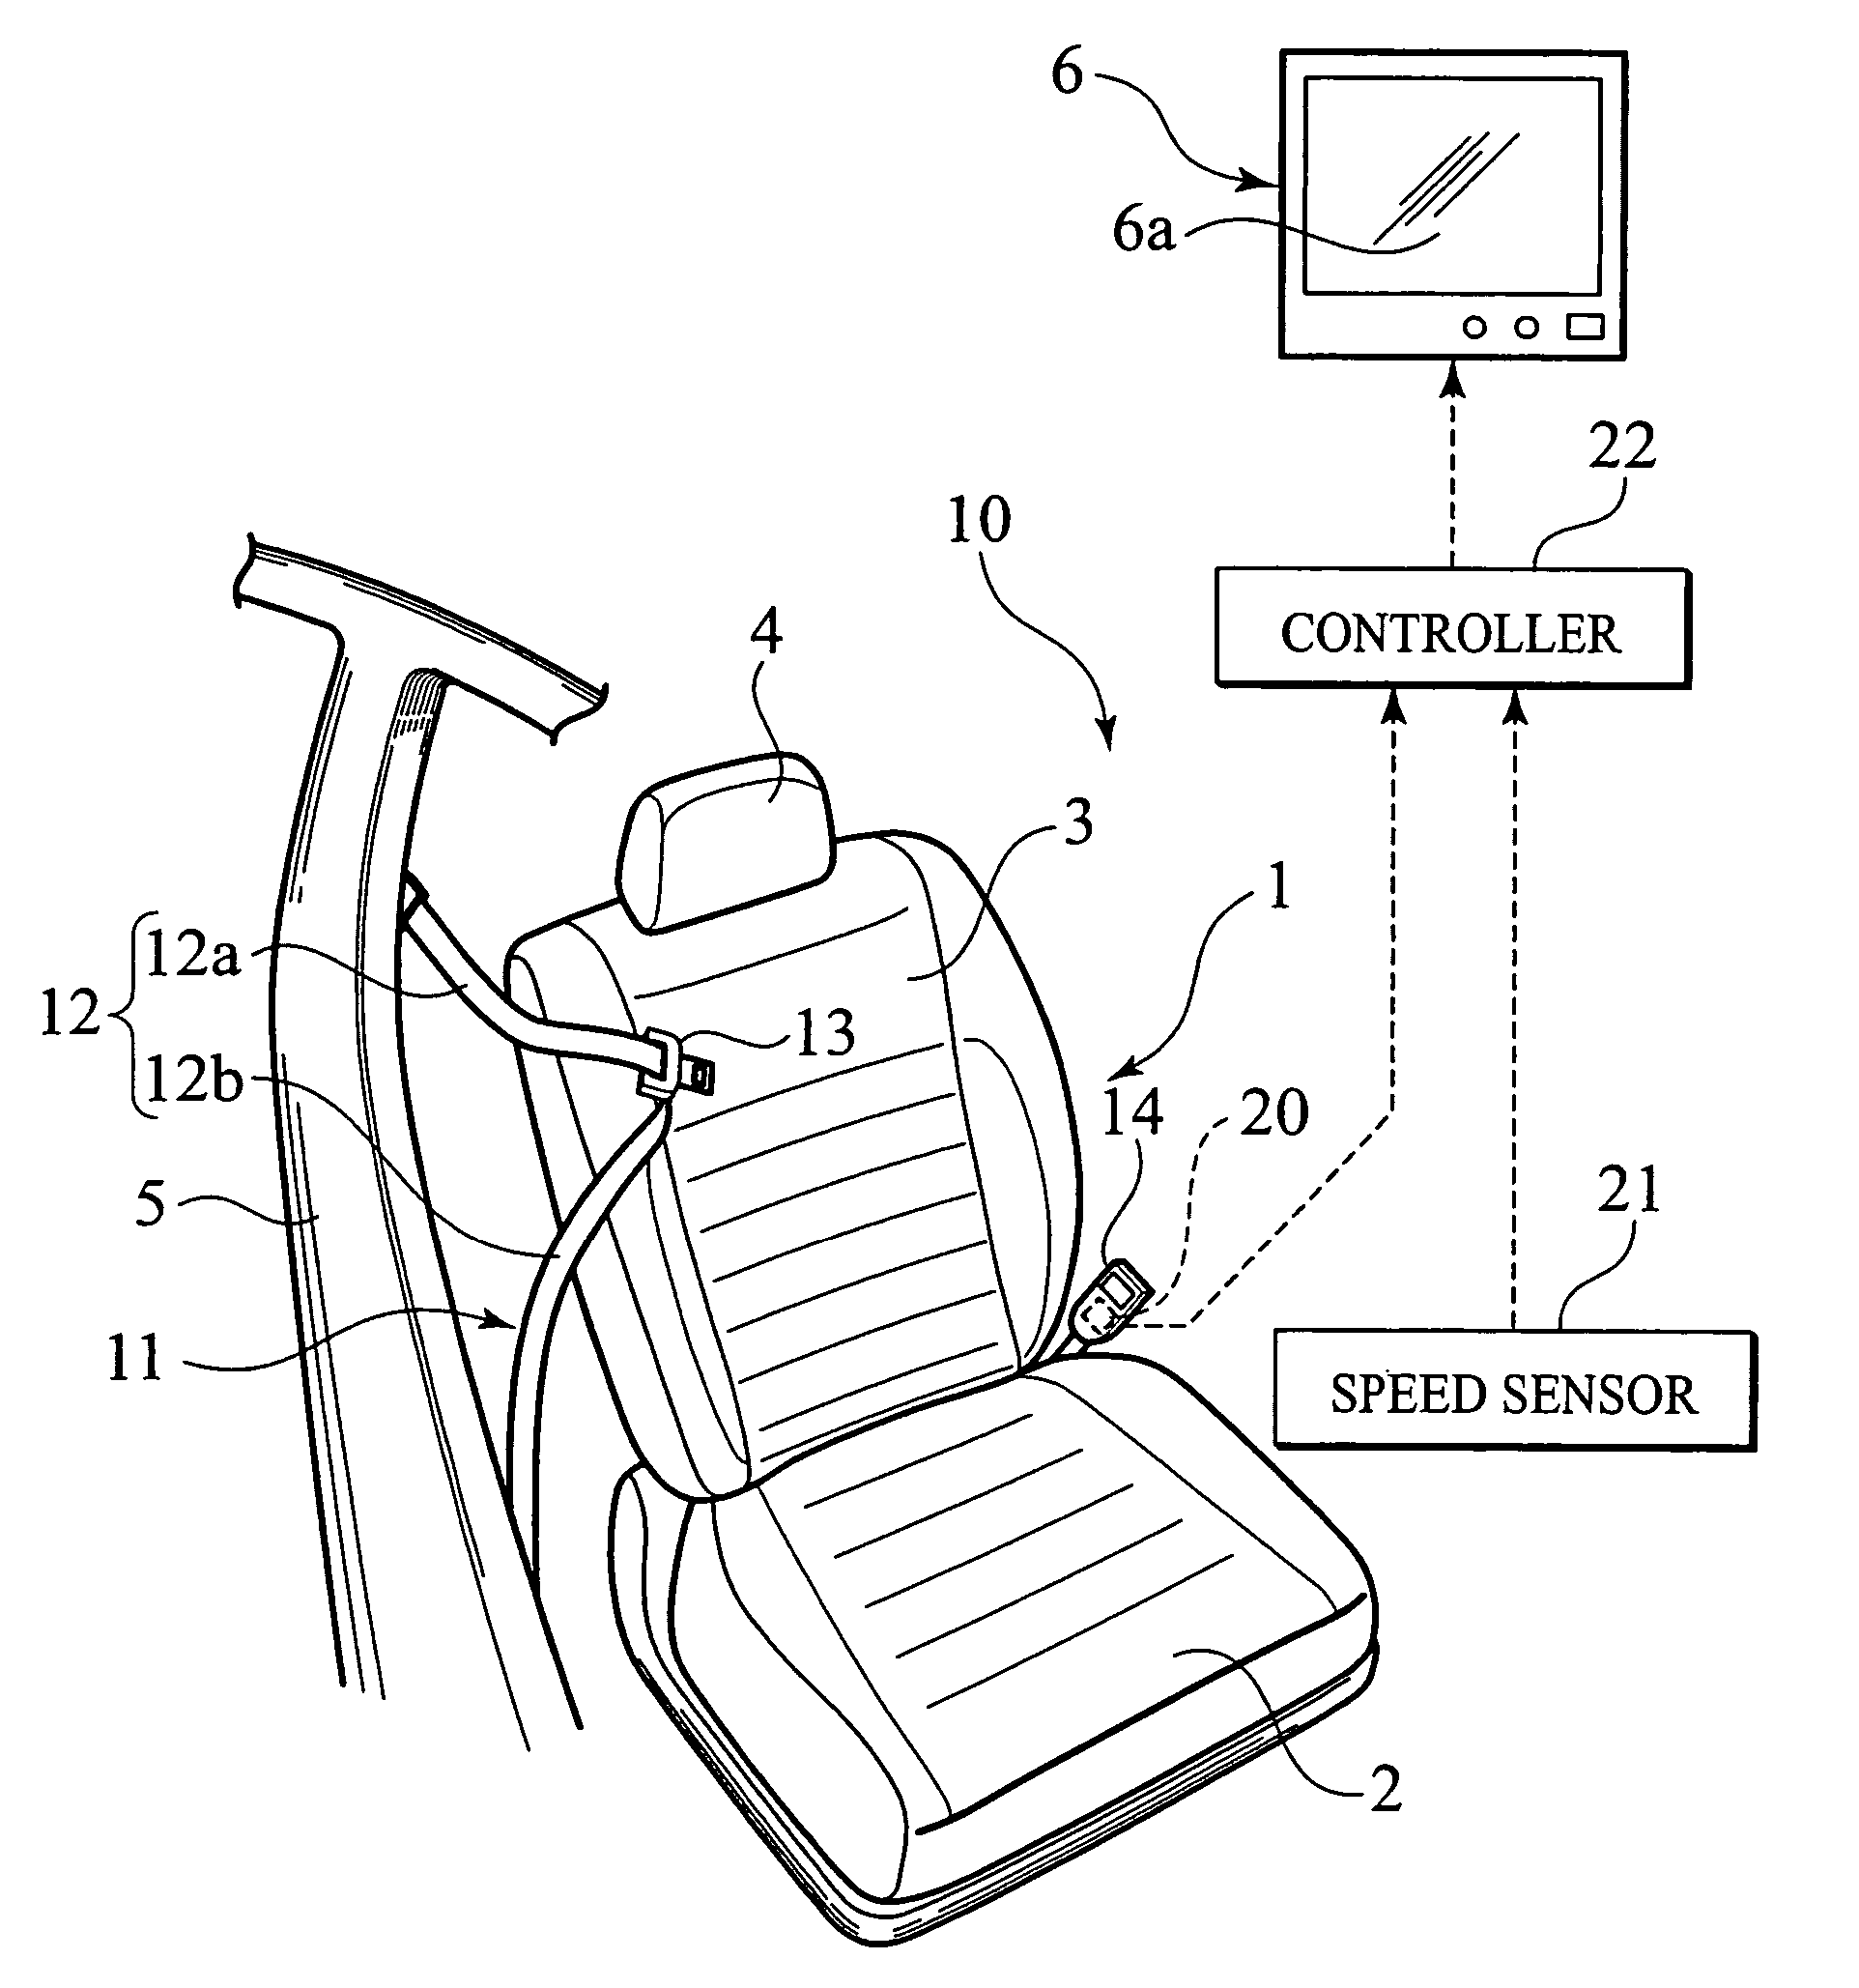 Seatbelt fastening prompting apparatus